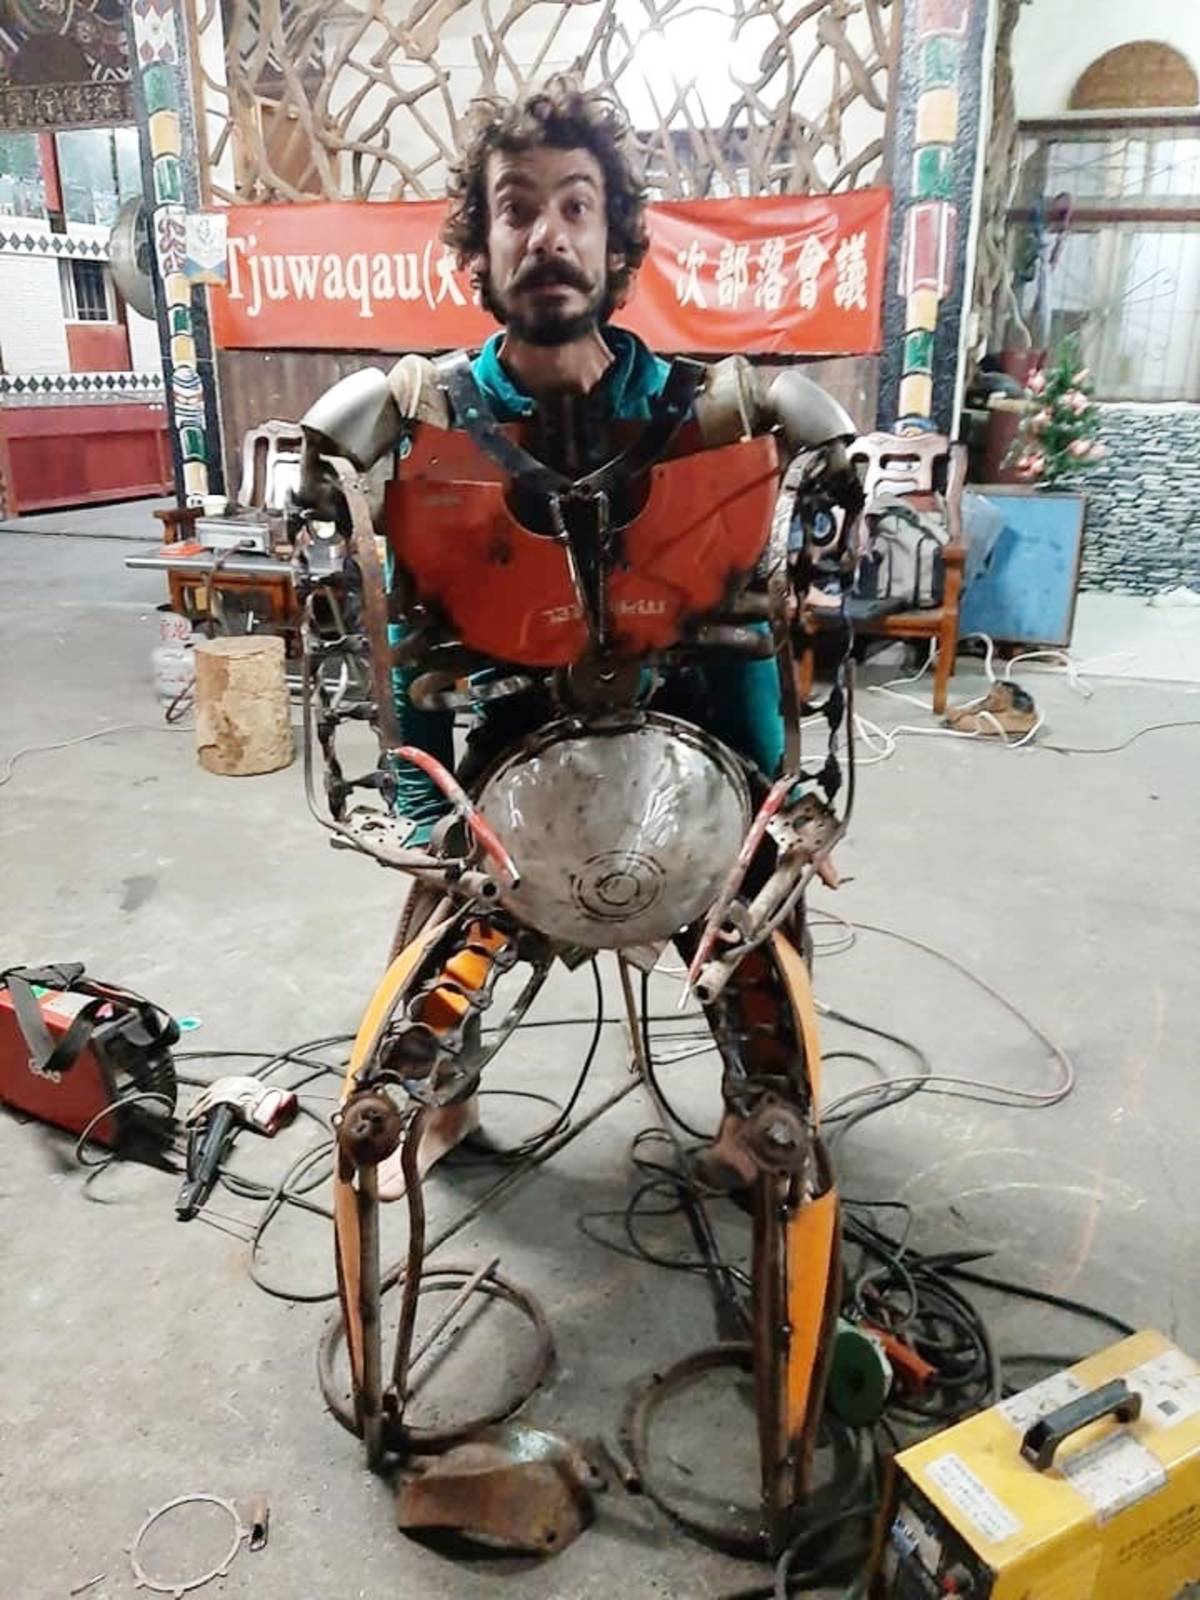 來自法國的Hugo Brunet和臺灣的張心蓉共同組成「魚龍加蛋 Hu-Jung Jah-Dan」藝術團隊，利用回收物品創作「勇士機器人」。